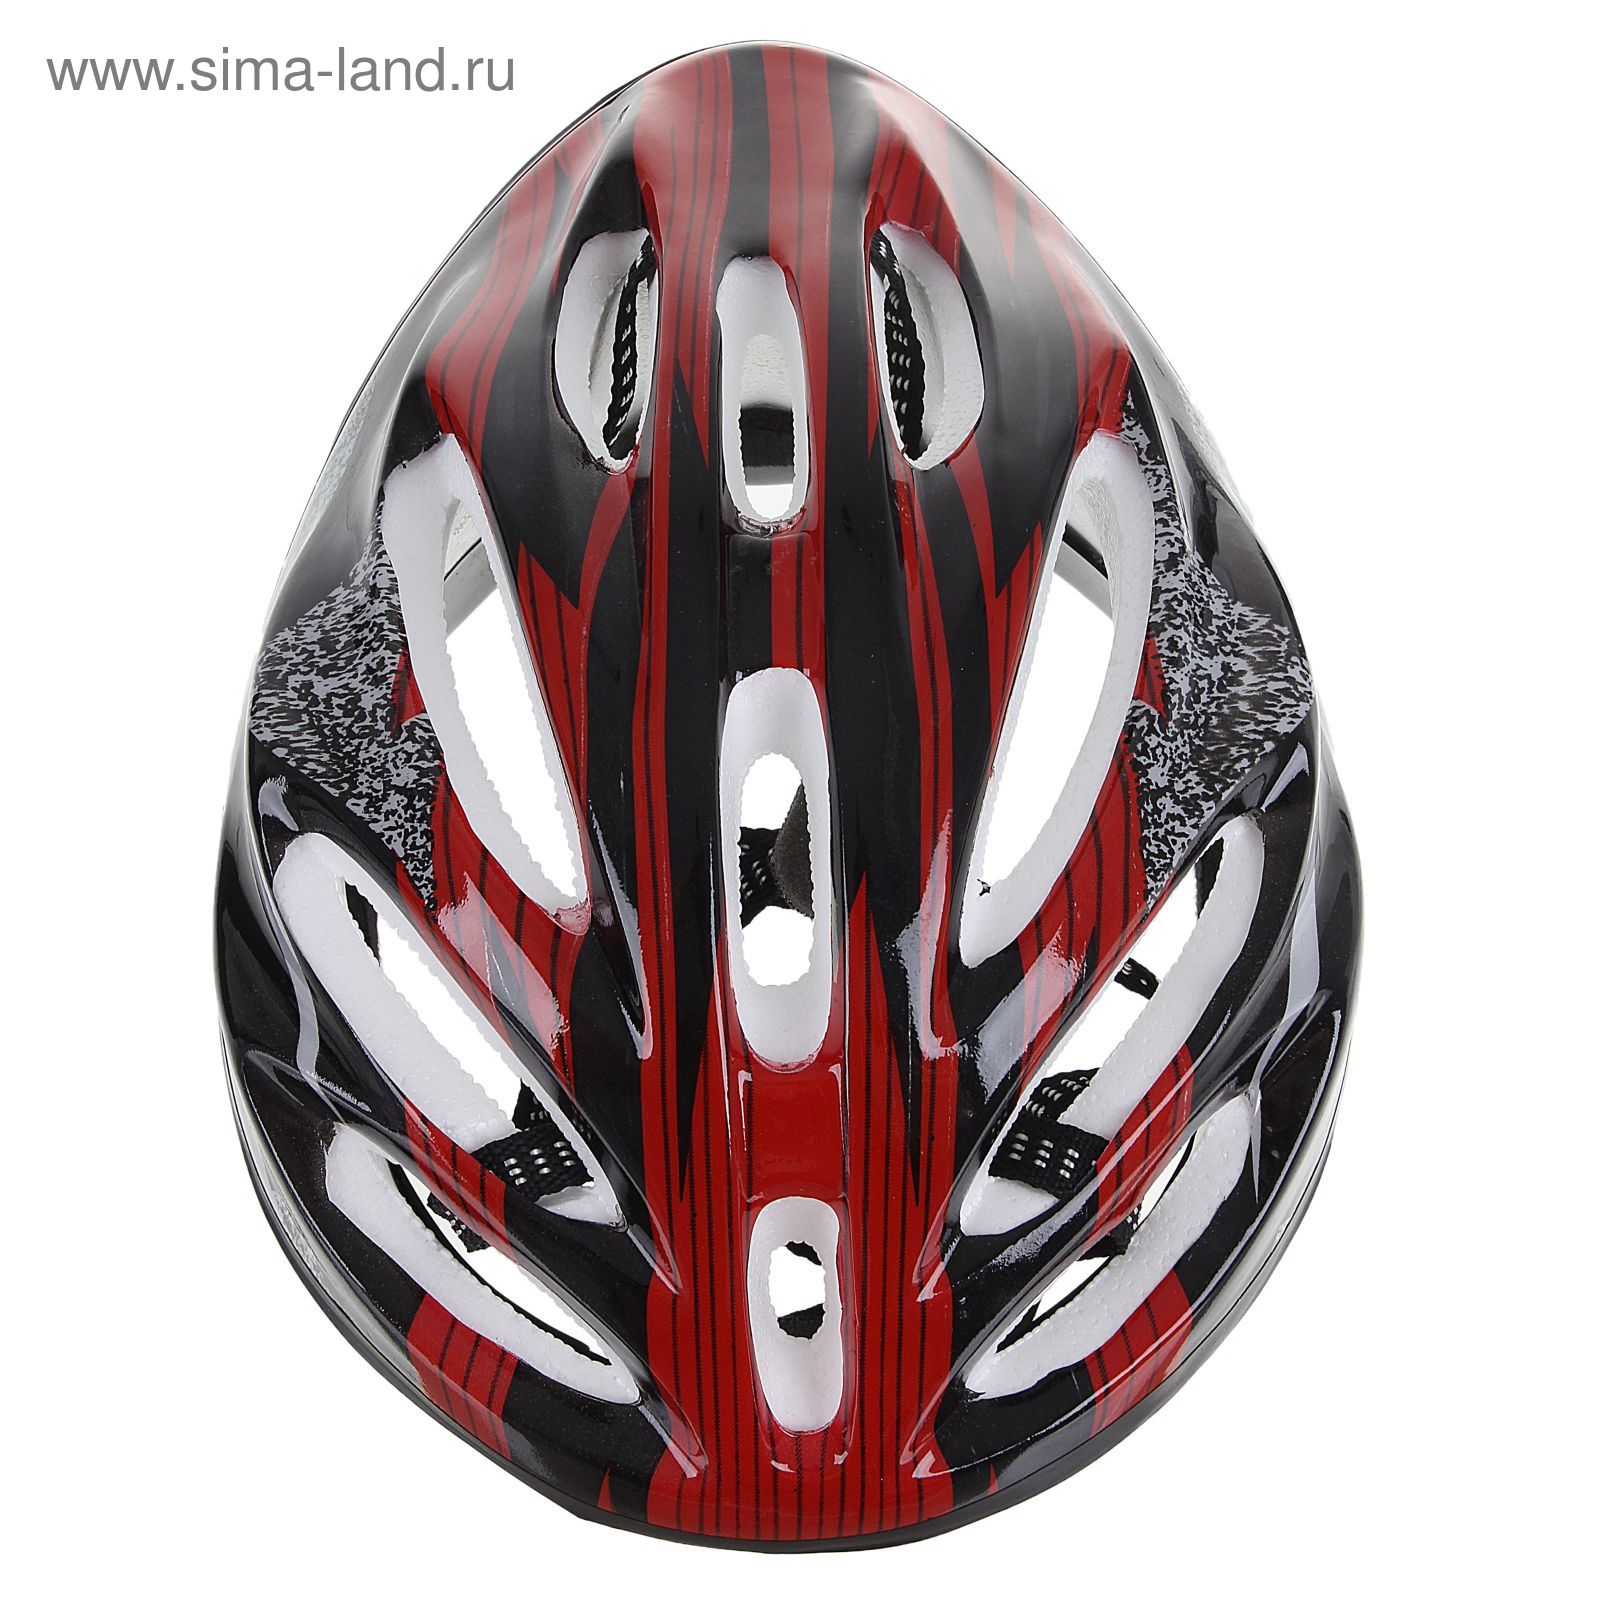 Шлем велосипедиста взрослый ОТ-11, размер L (56-58 см), цвет: красный